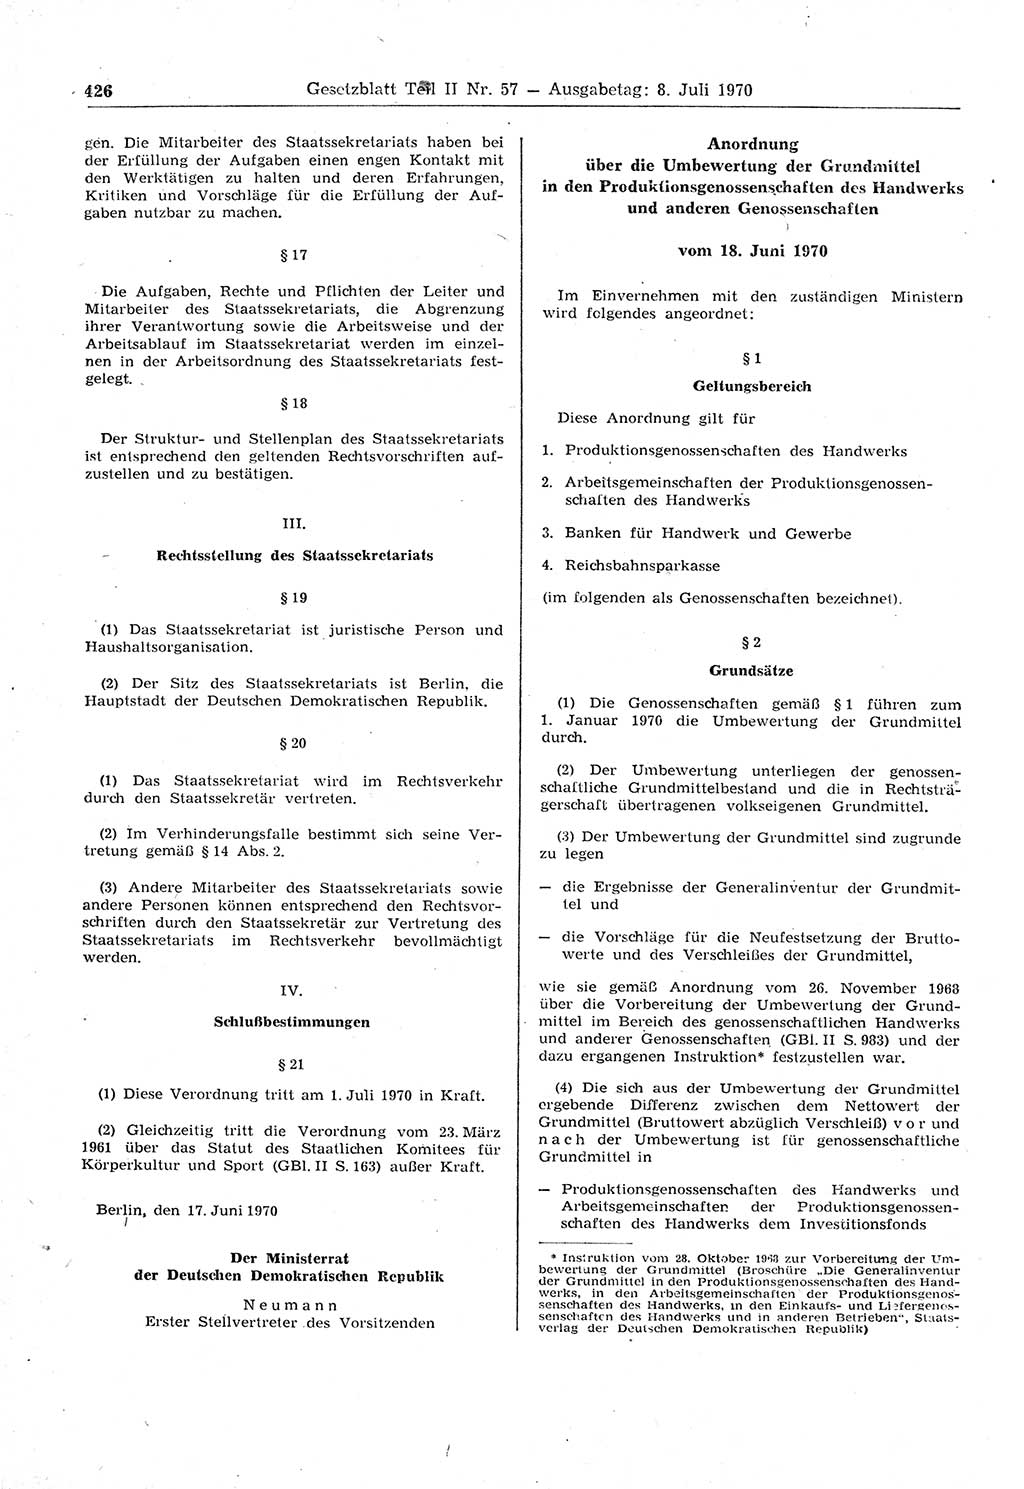 Gesetzblatt (GBl.) der Deutschen Demokratischen Republik (DDR) Teil ⅠⅠ 1970, Seite 426 (GBl. DDR ⅠⅠ 1970, S. 426)